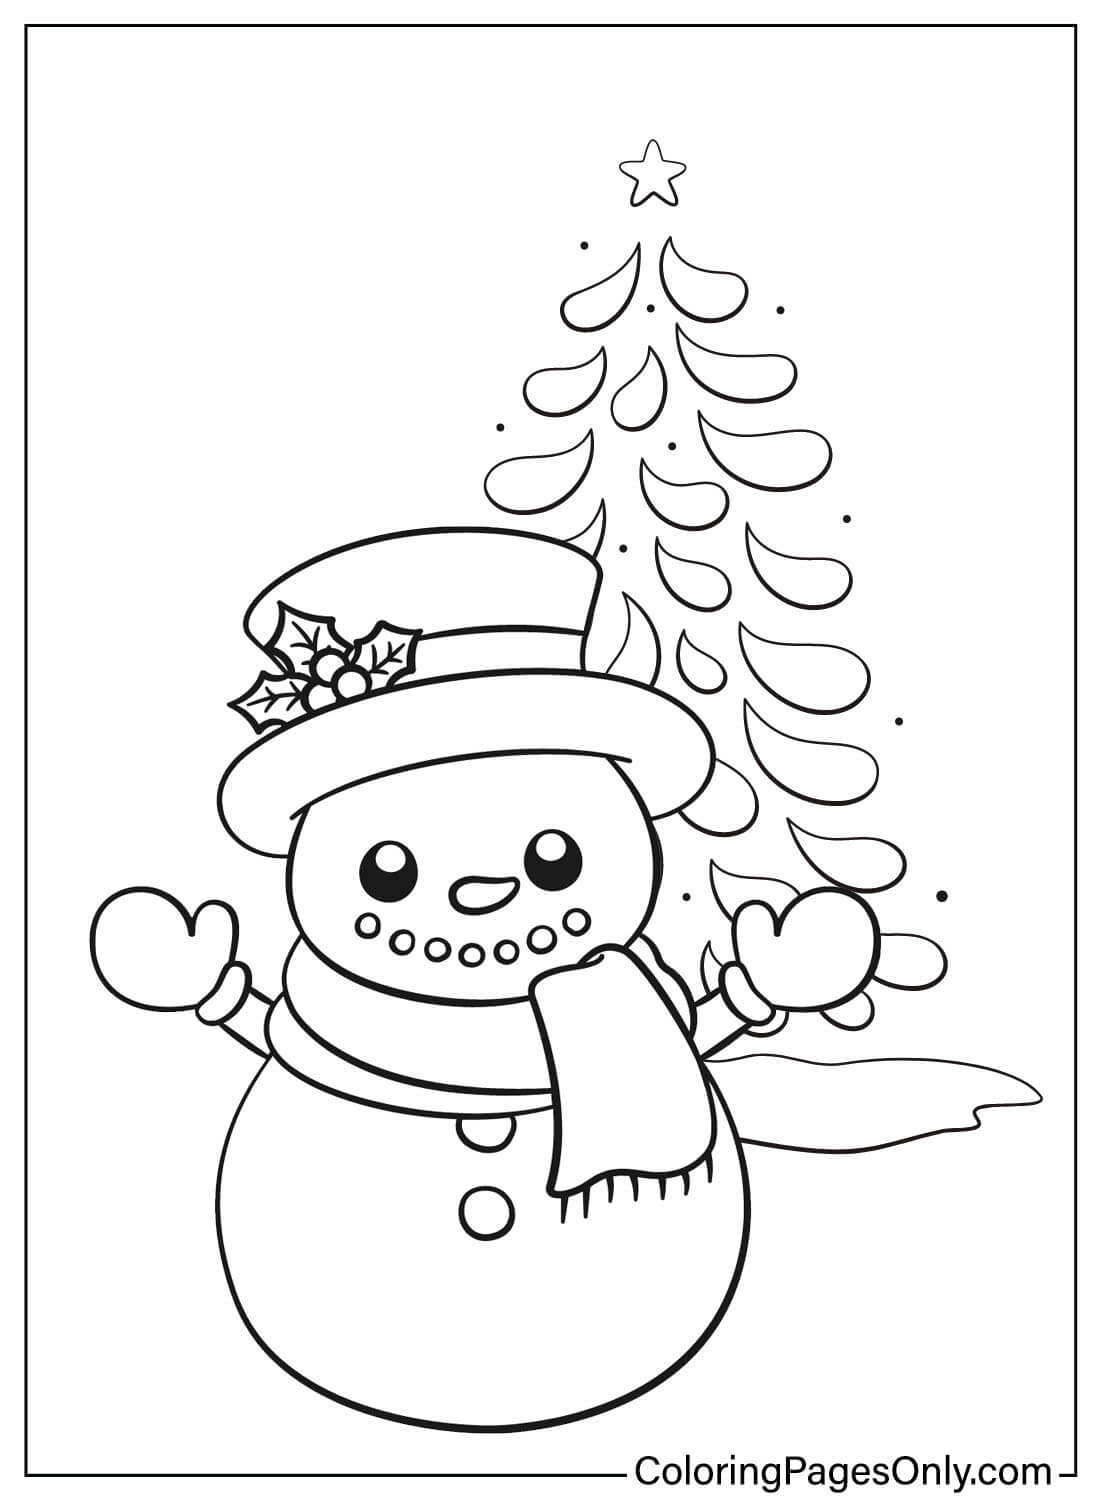 Livro para colorir boneco de neve